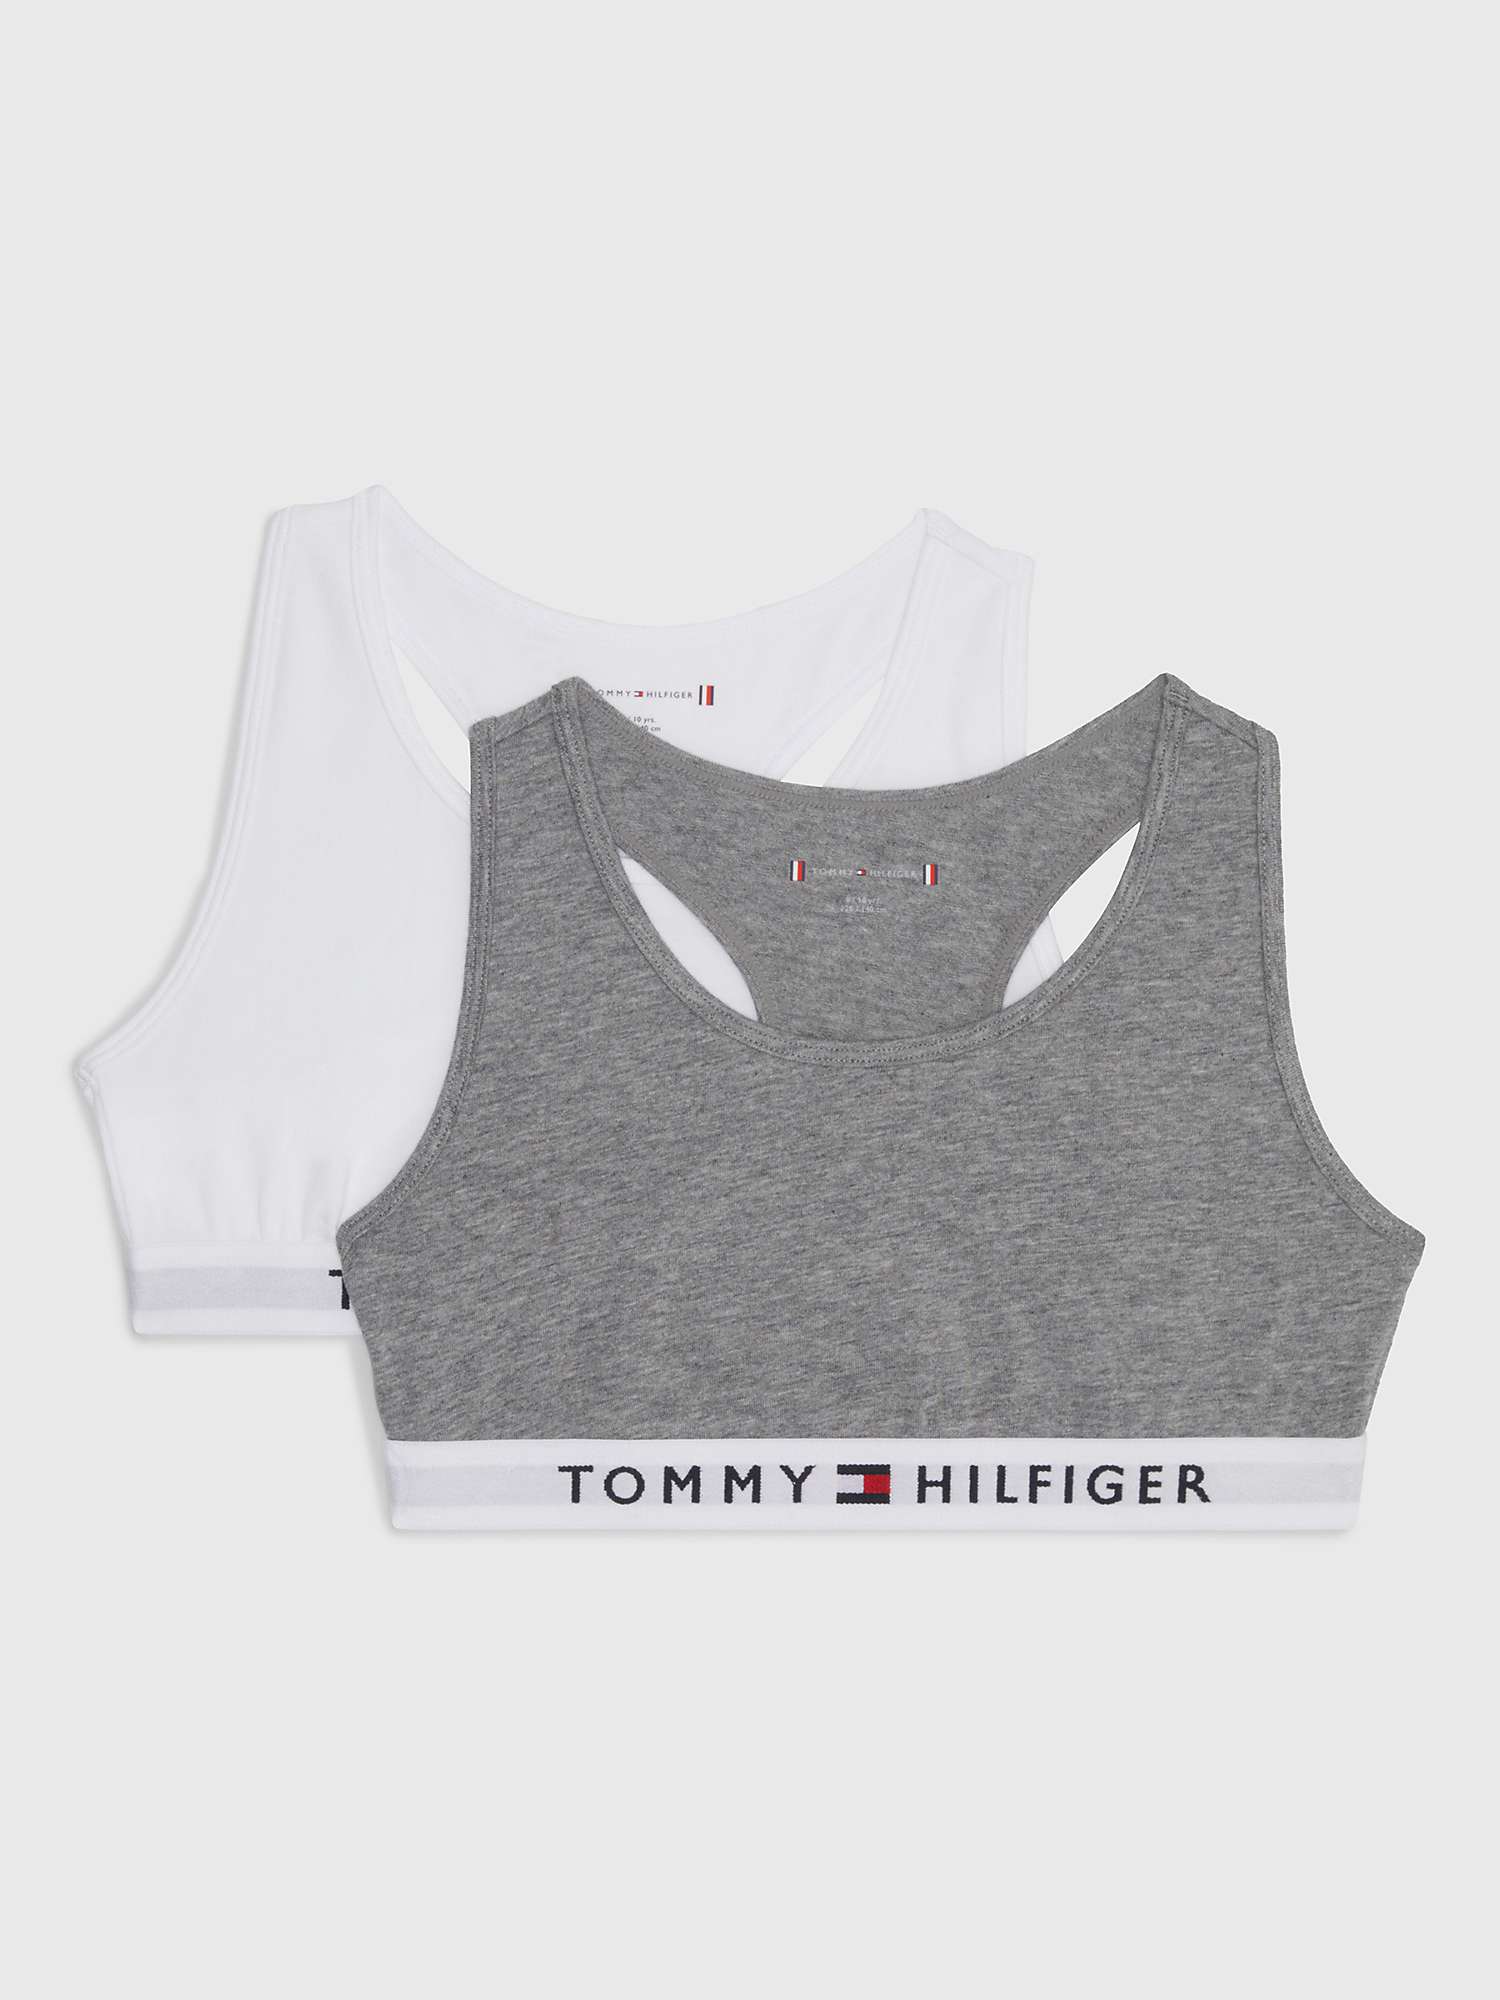 Buy Tommy Hilfiger Children's Tommy Original Bralette's, Pack of 2 Online at johnlewis.com